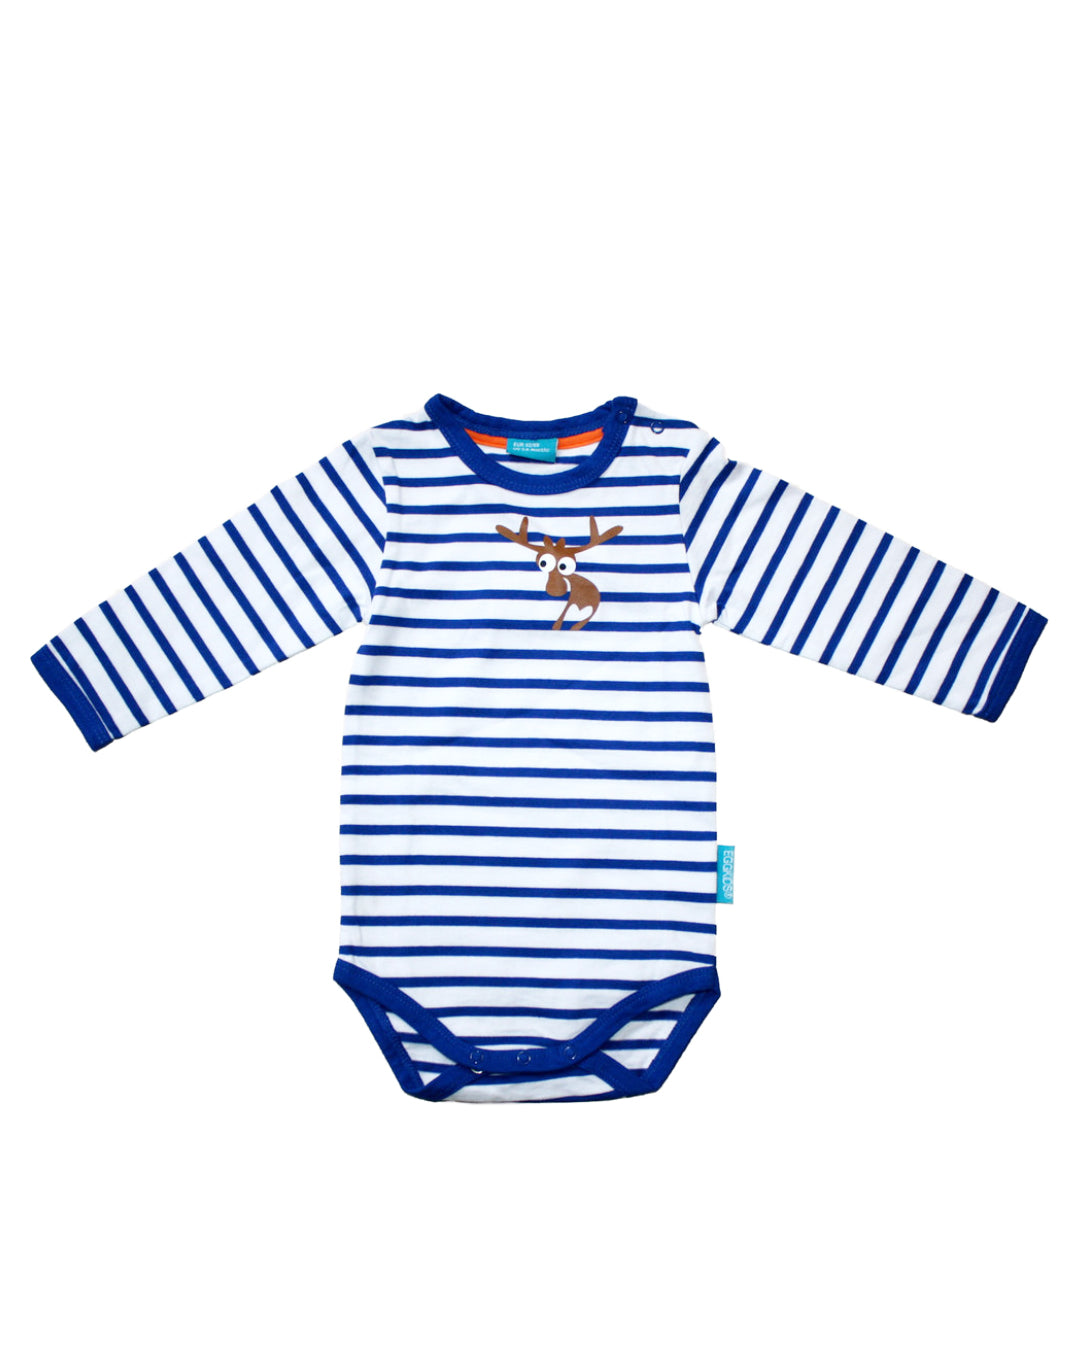 Langärmliger Babybody in weiß mit blauen Streifen und braunem kleinen Elch in Brusthöhe